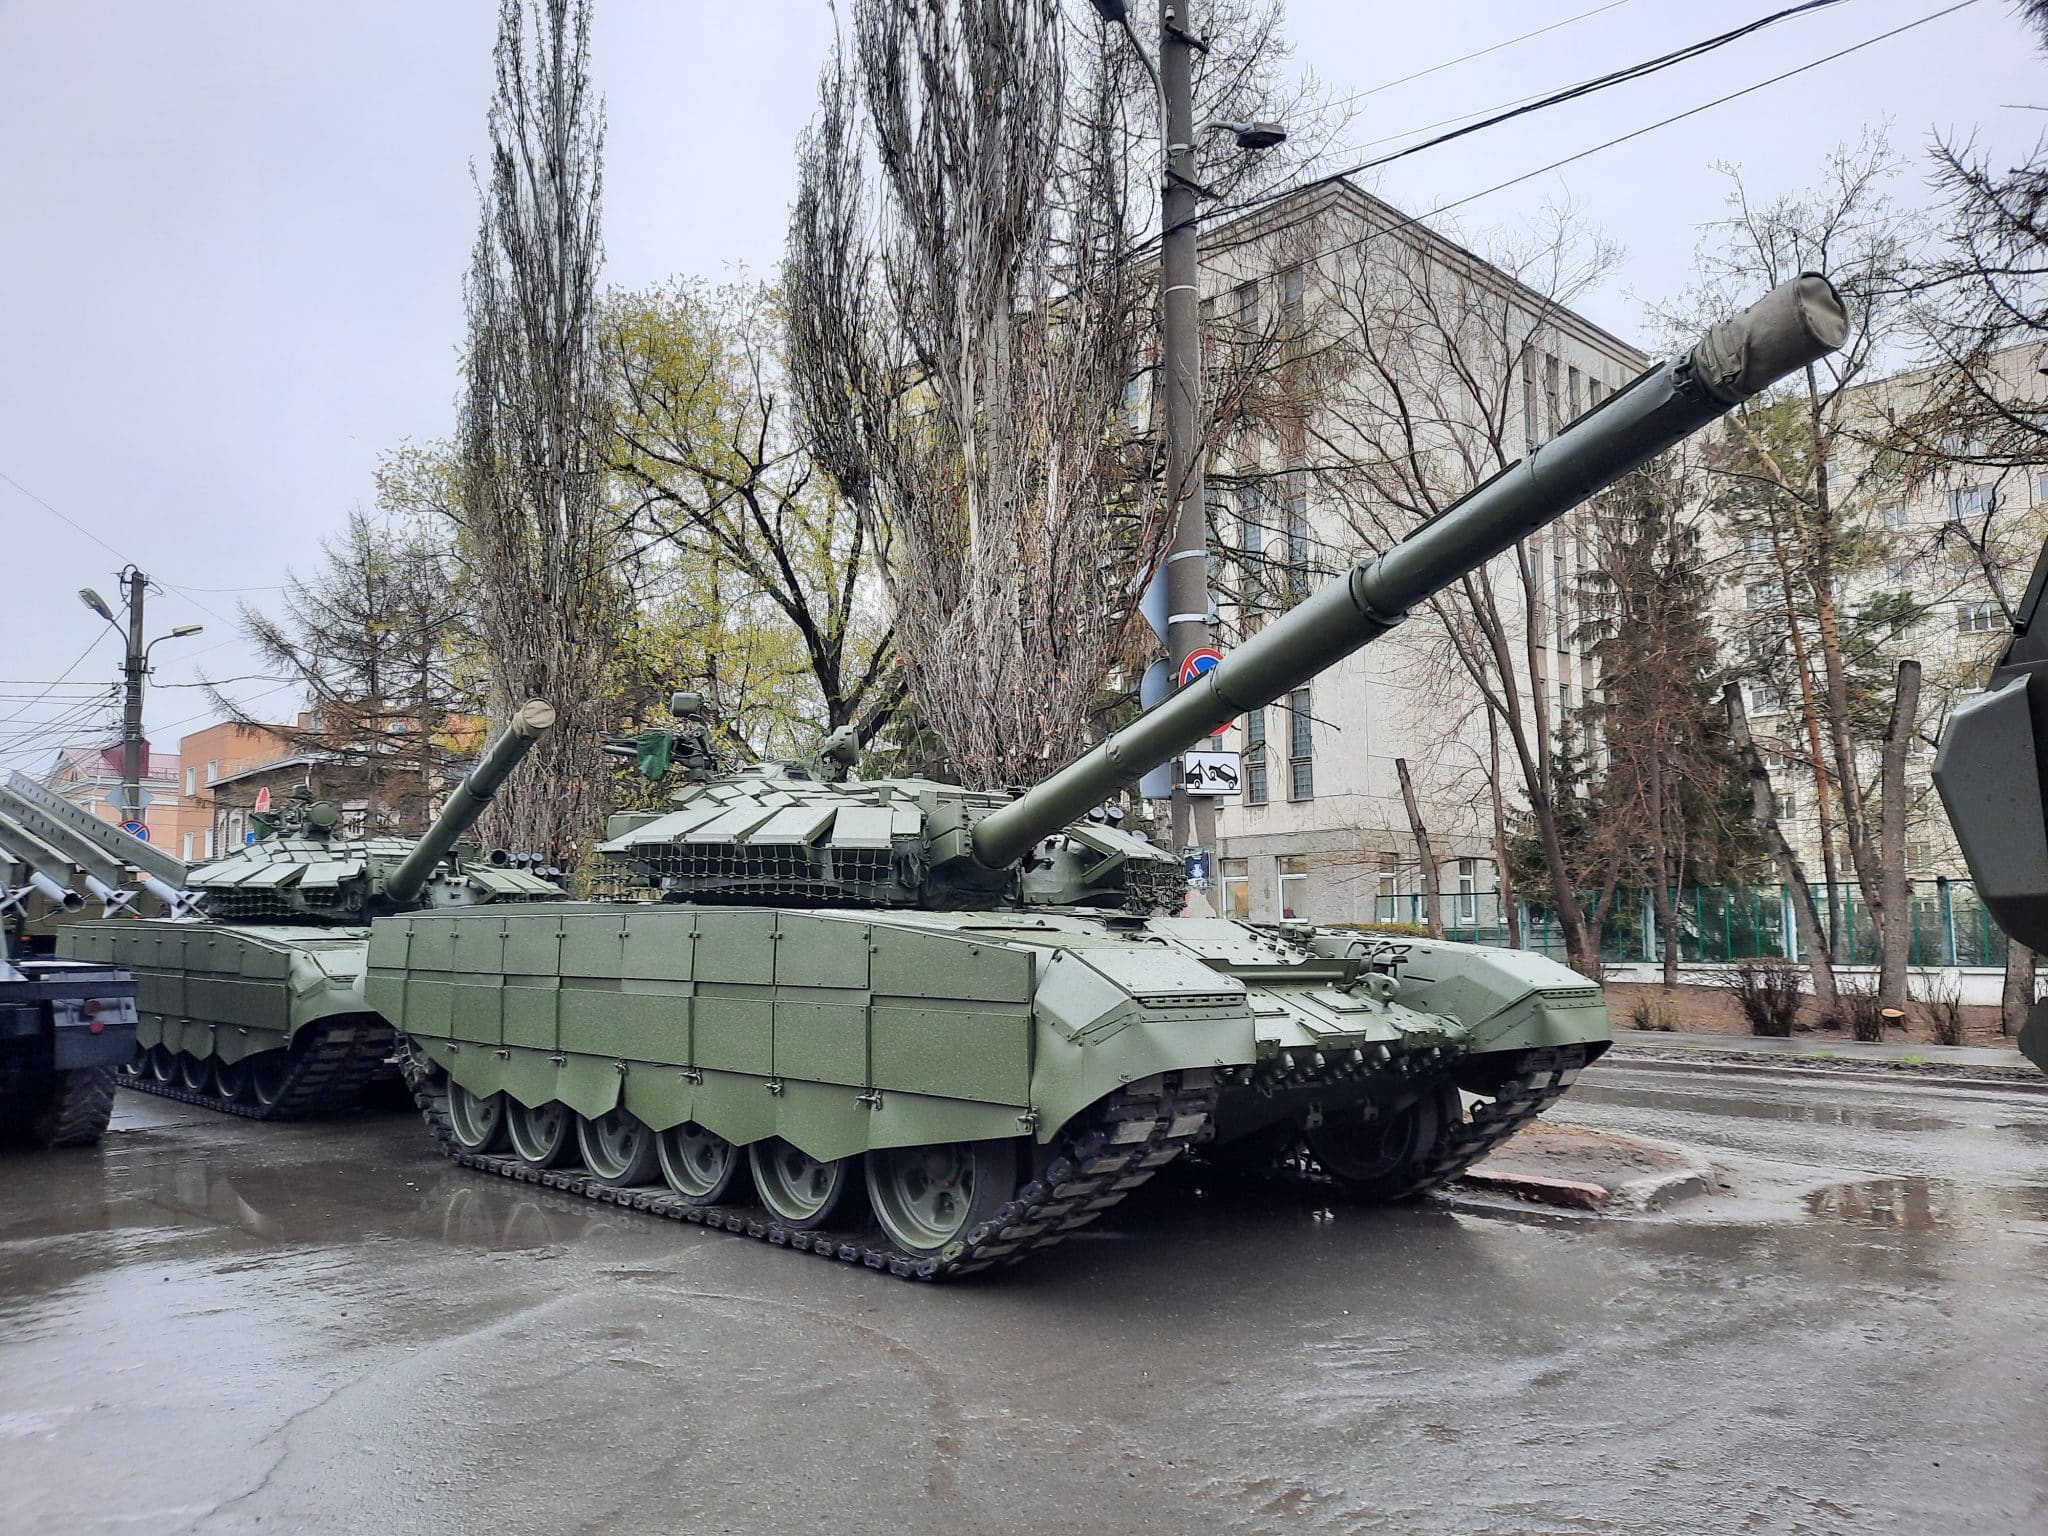 Центр Омска заполонила военная техника - показываем фото